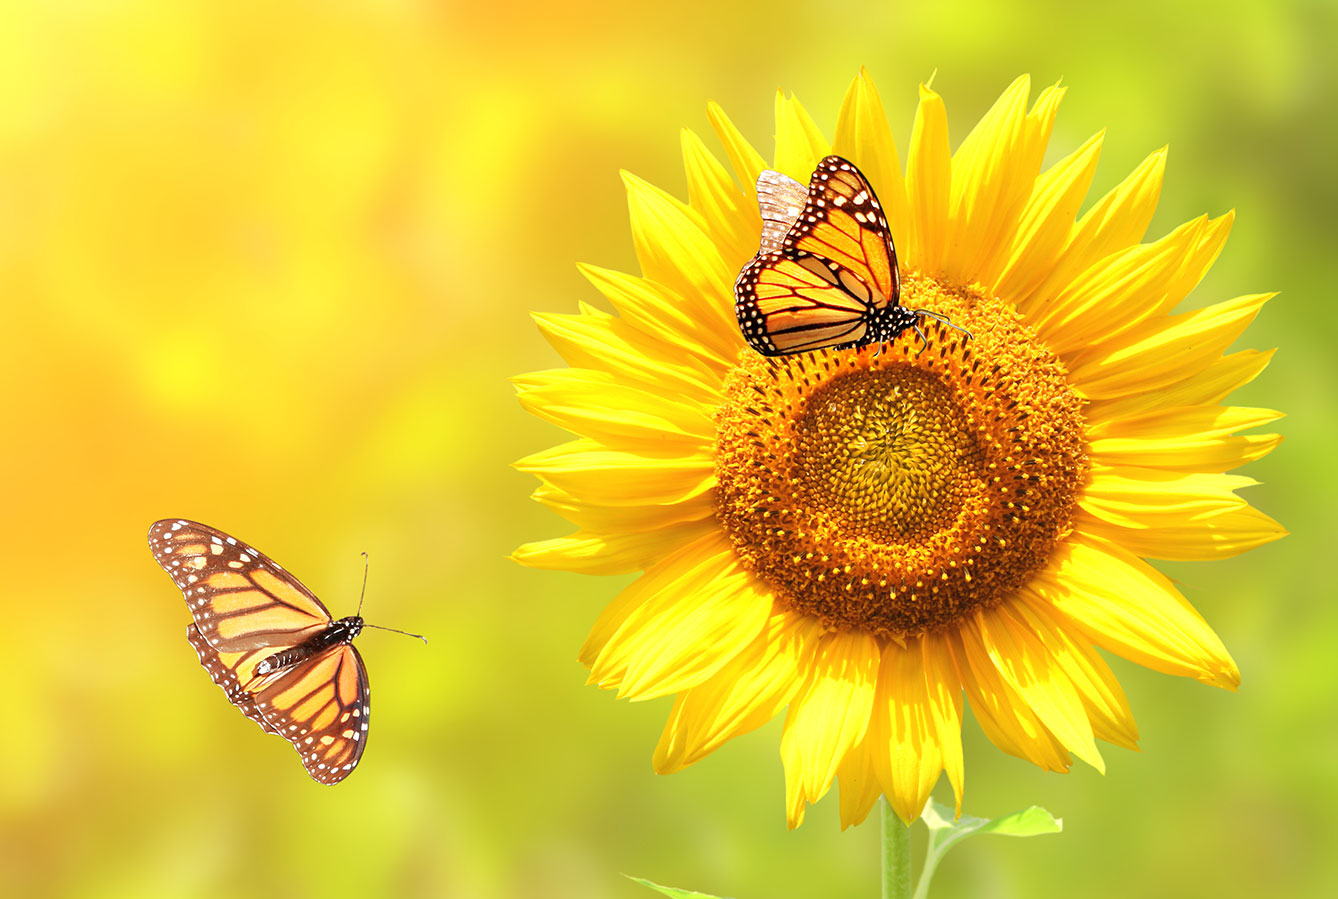 Monarch butterflies and sunflower